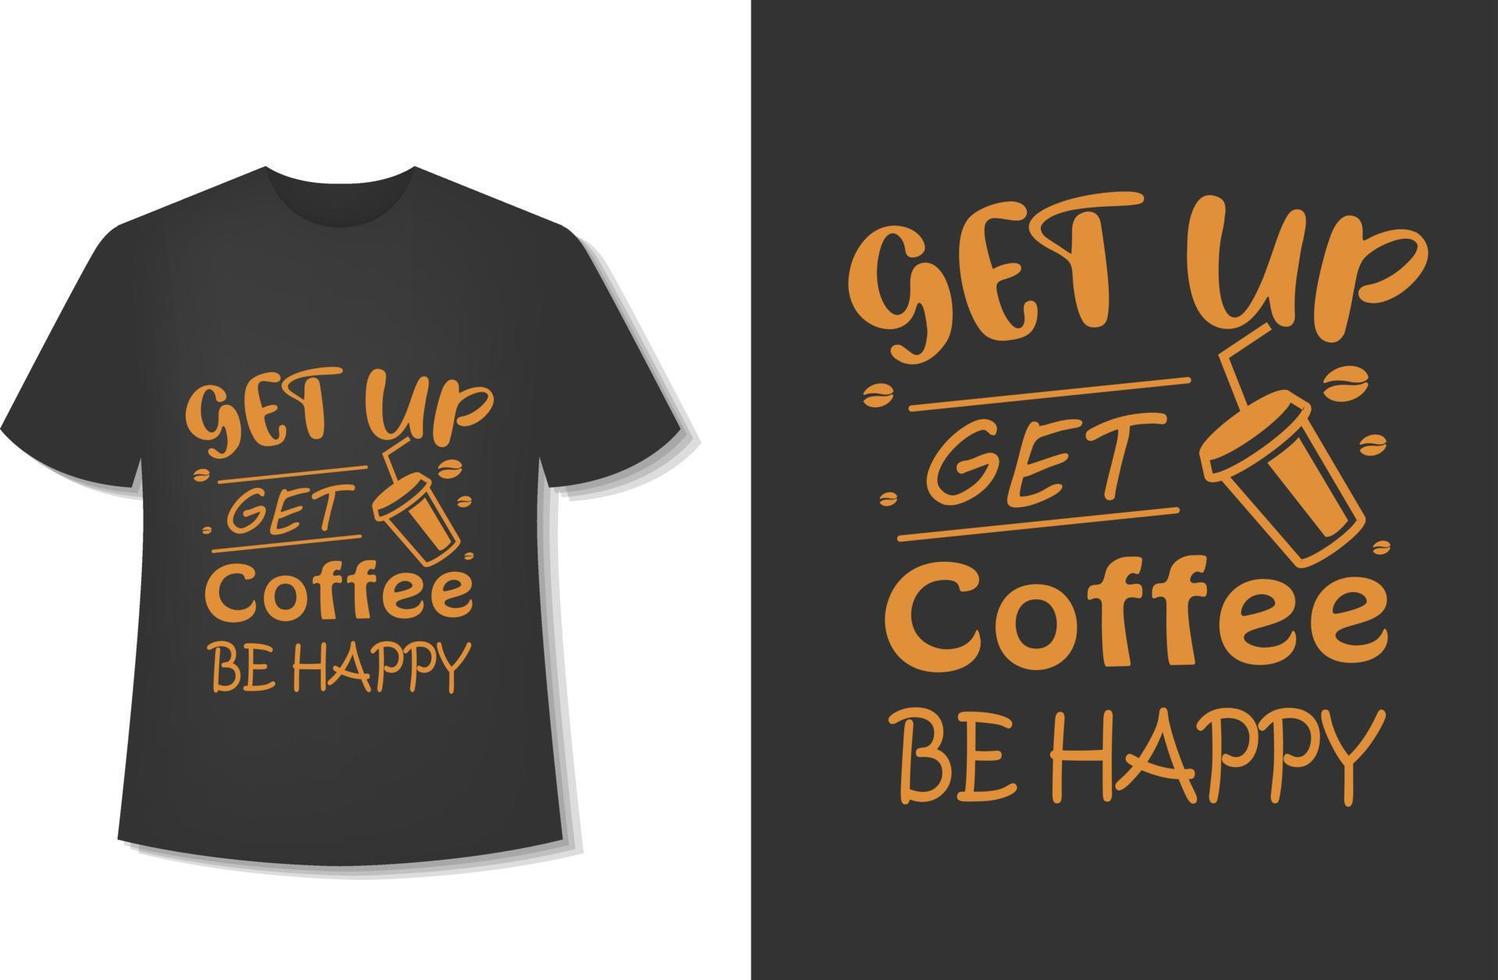 krijgen omhoog krijgen koffie worden gelukkig. typografie koffie t-shirt ontwerp. klaar voor afdrukken. vector illustratie met hand getekend.